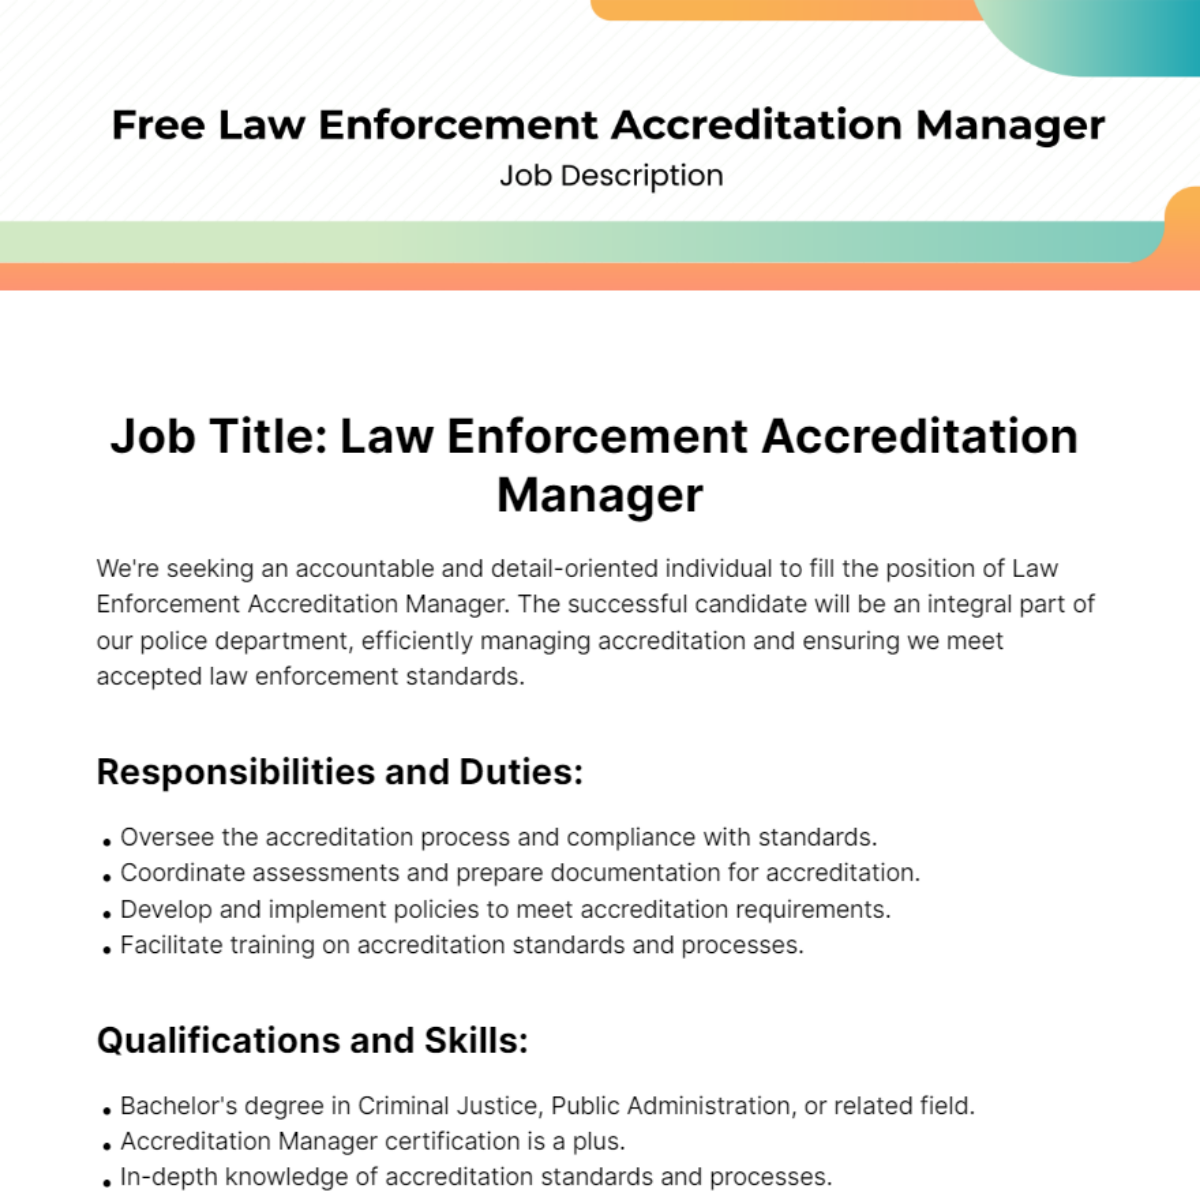 Free Law Enforcement Accreditation Manager Job Description Template